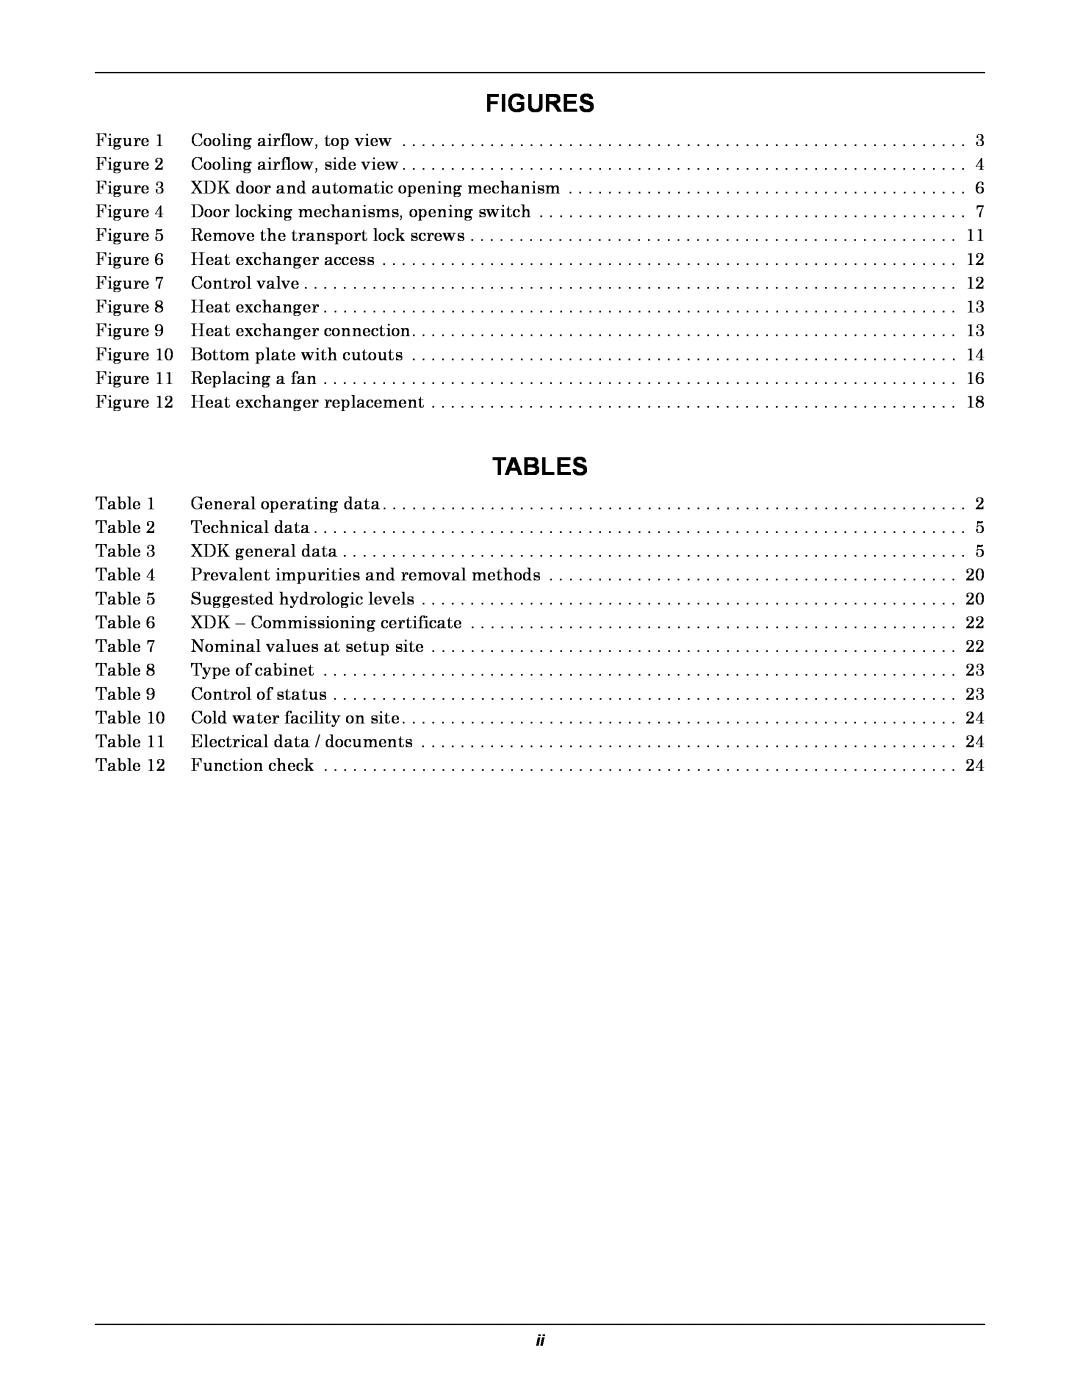 Liebert XDK user manual Figures, Tables 